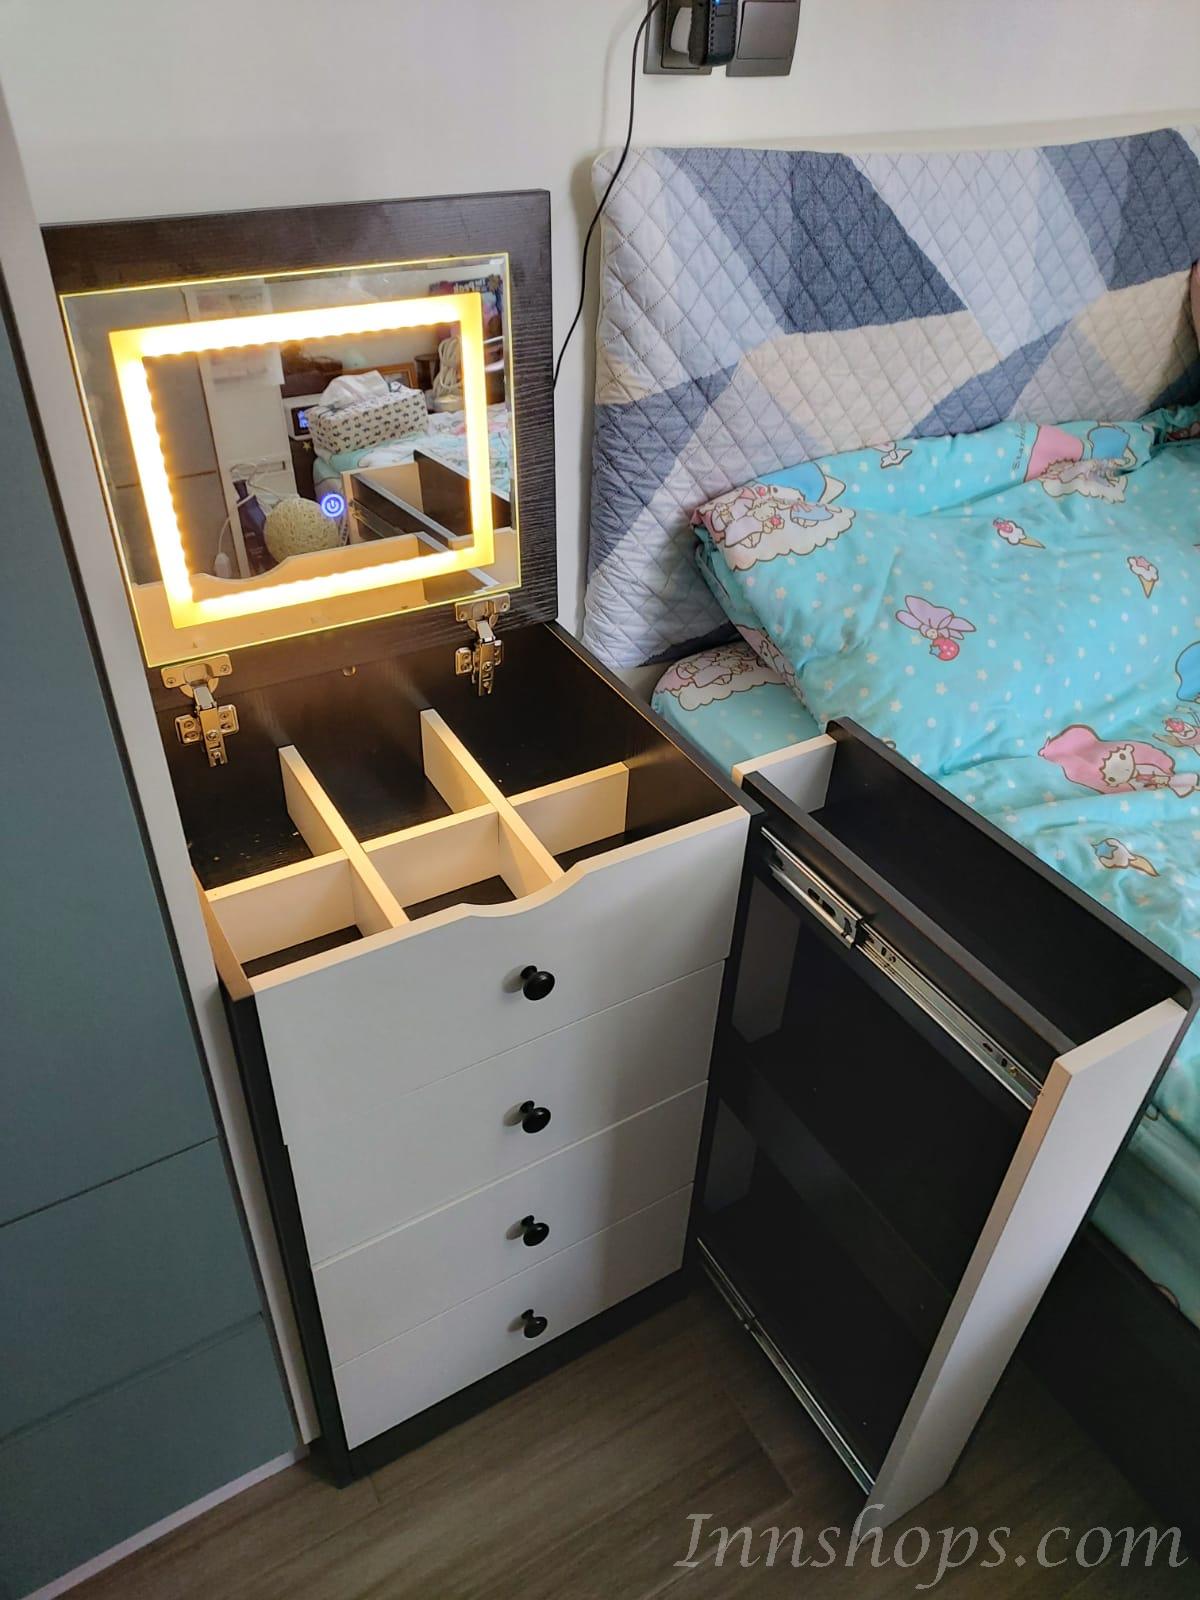 梳妝台小型臥室現代簡約風帶燈輕奢化妝桌收納櫃（IS7778)